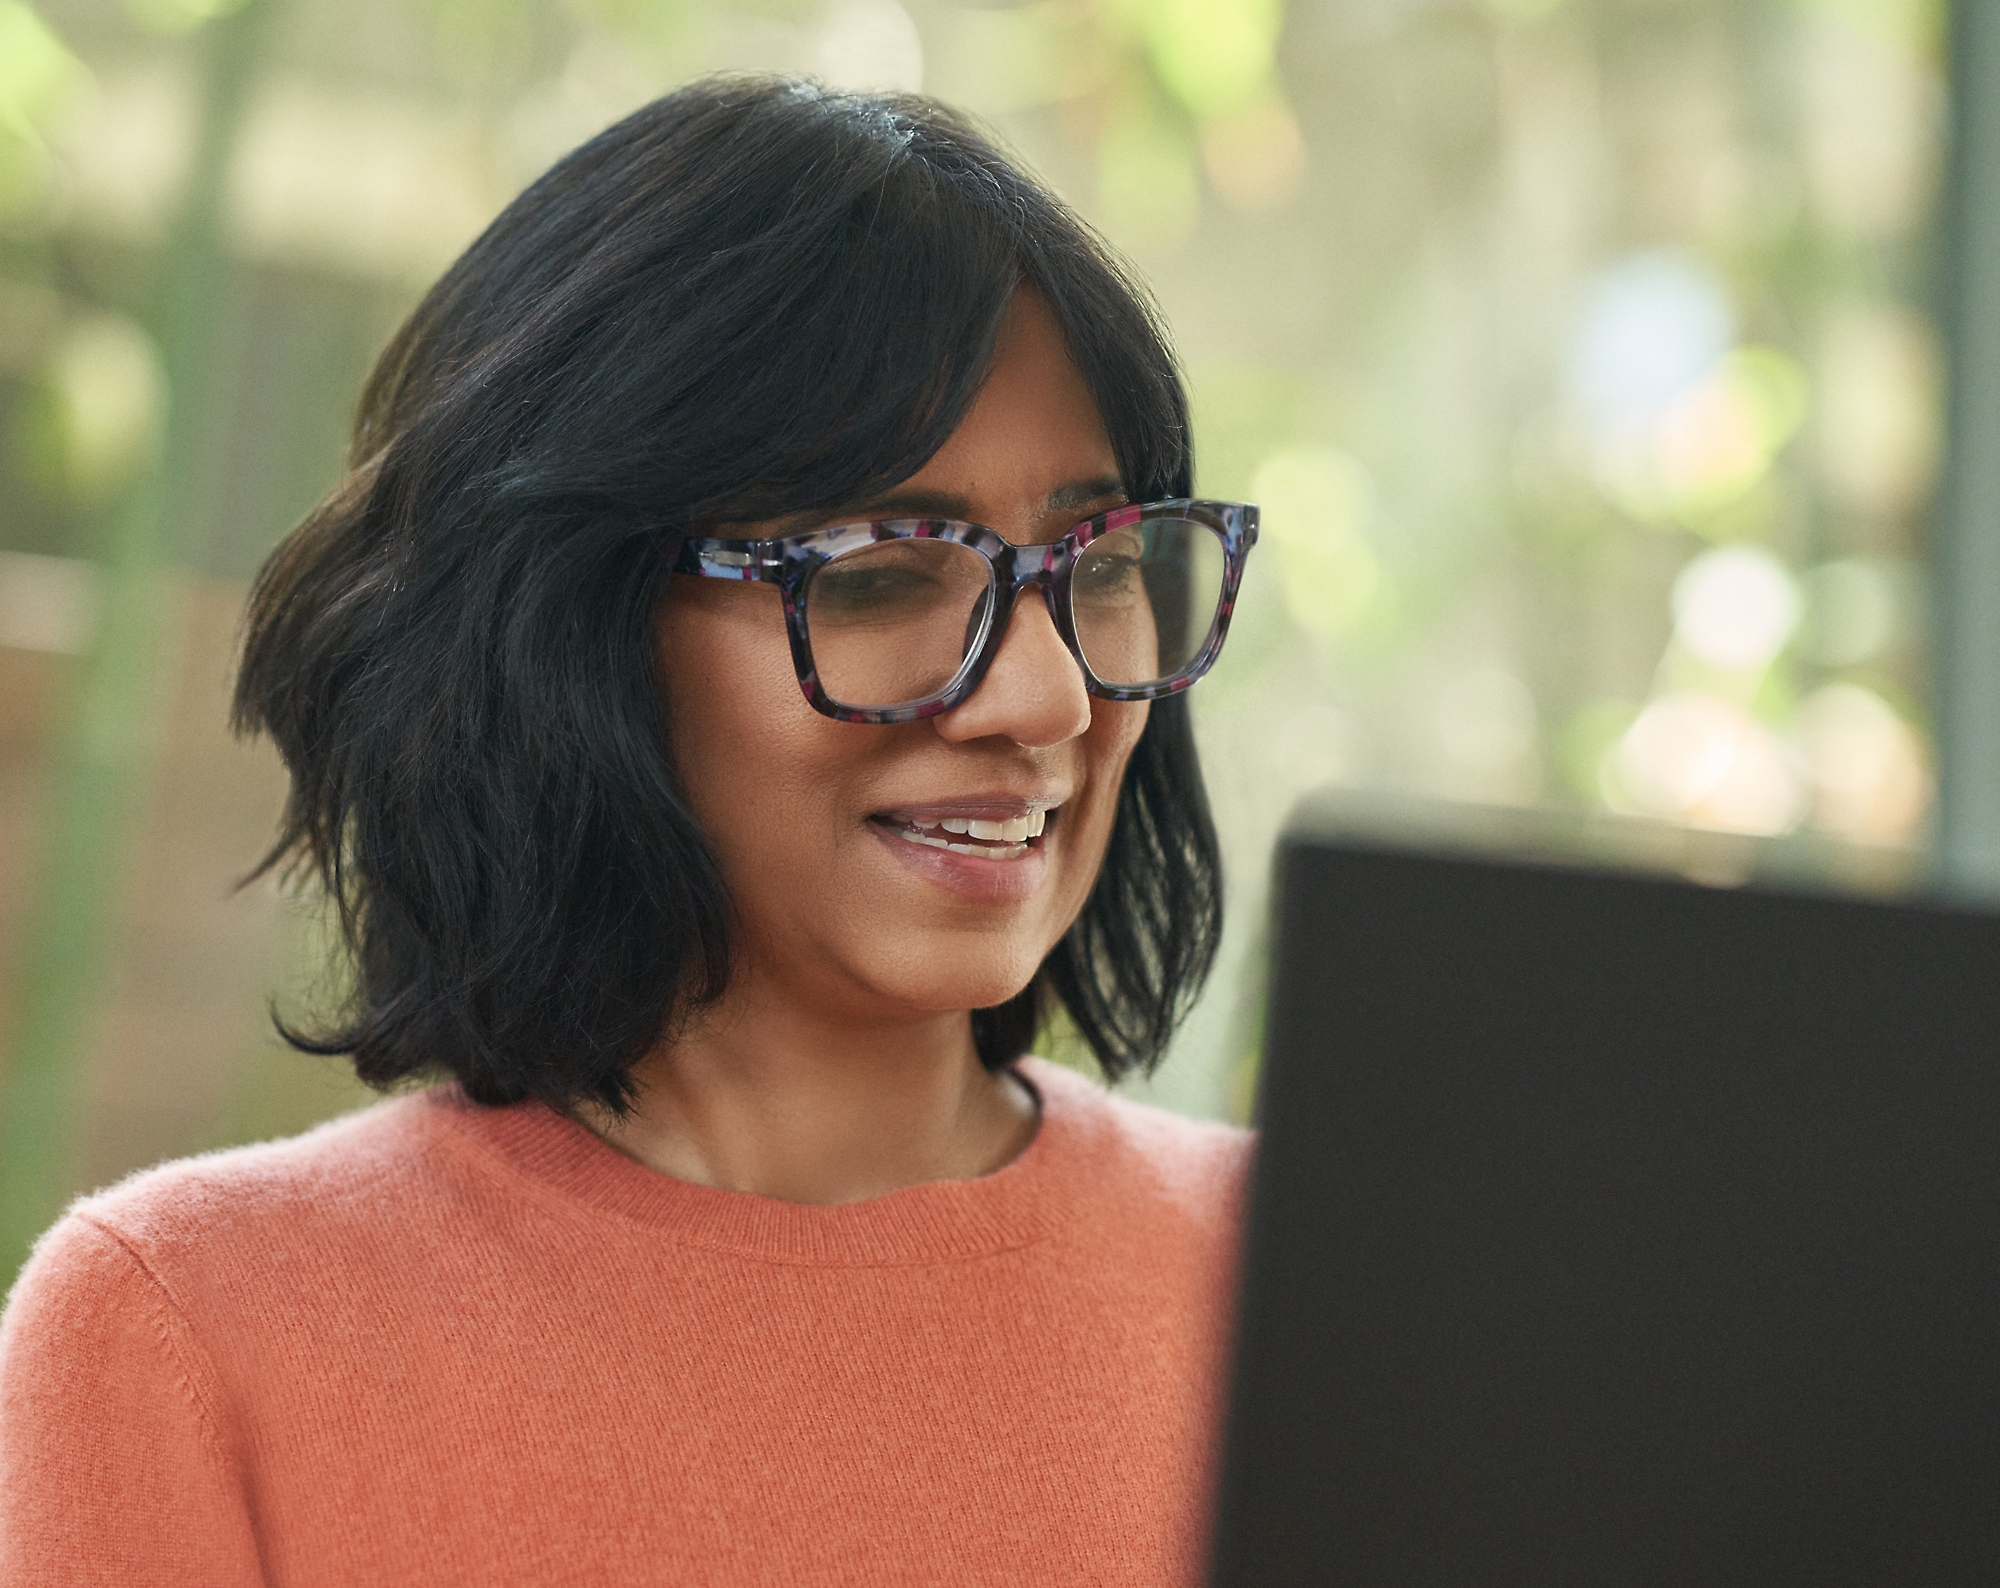 Eine Frau mit Brille lächelt und arbeitet an ihrem Laptop